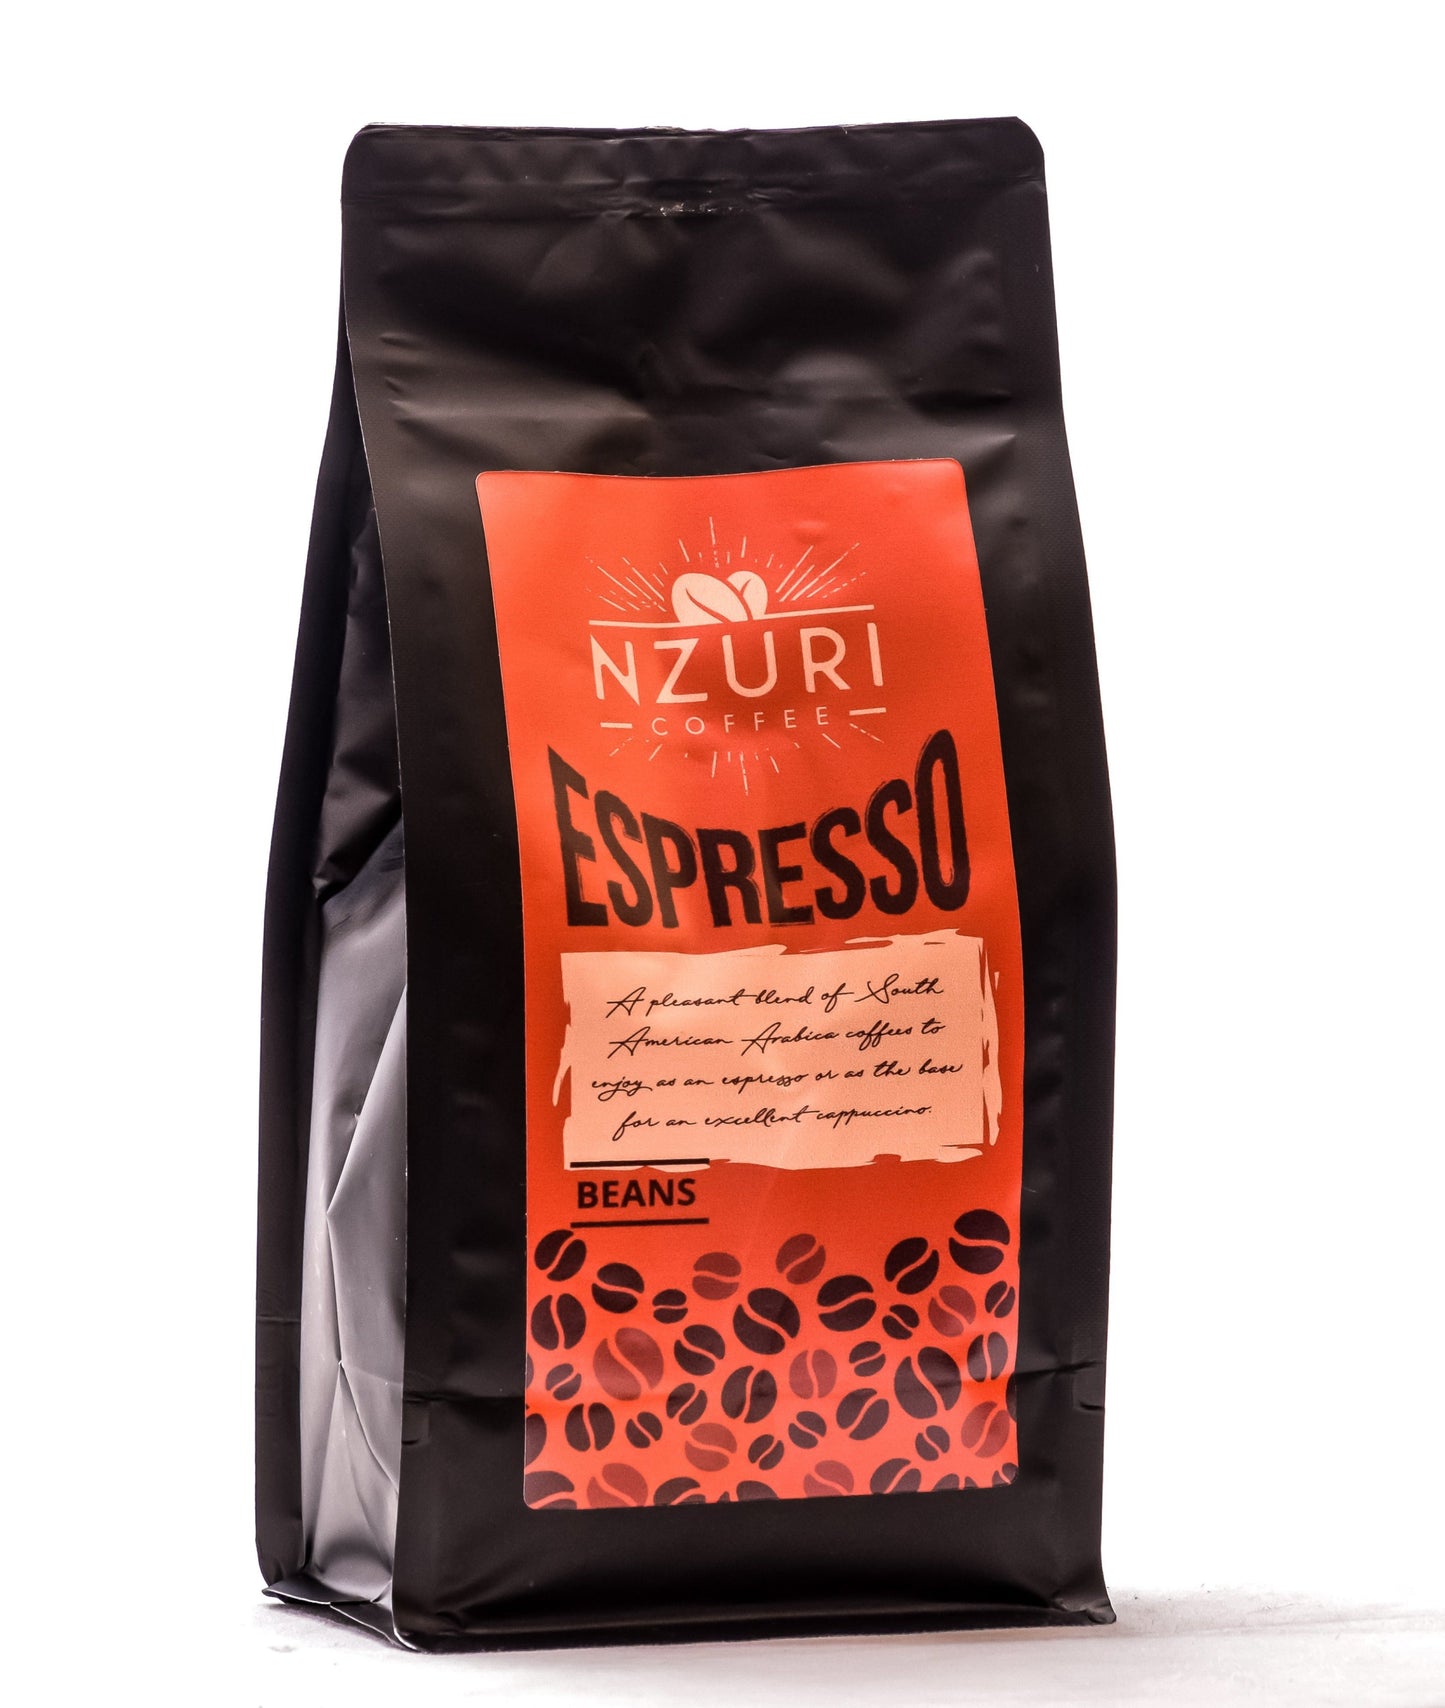 Nzuri Espresso